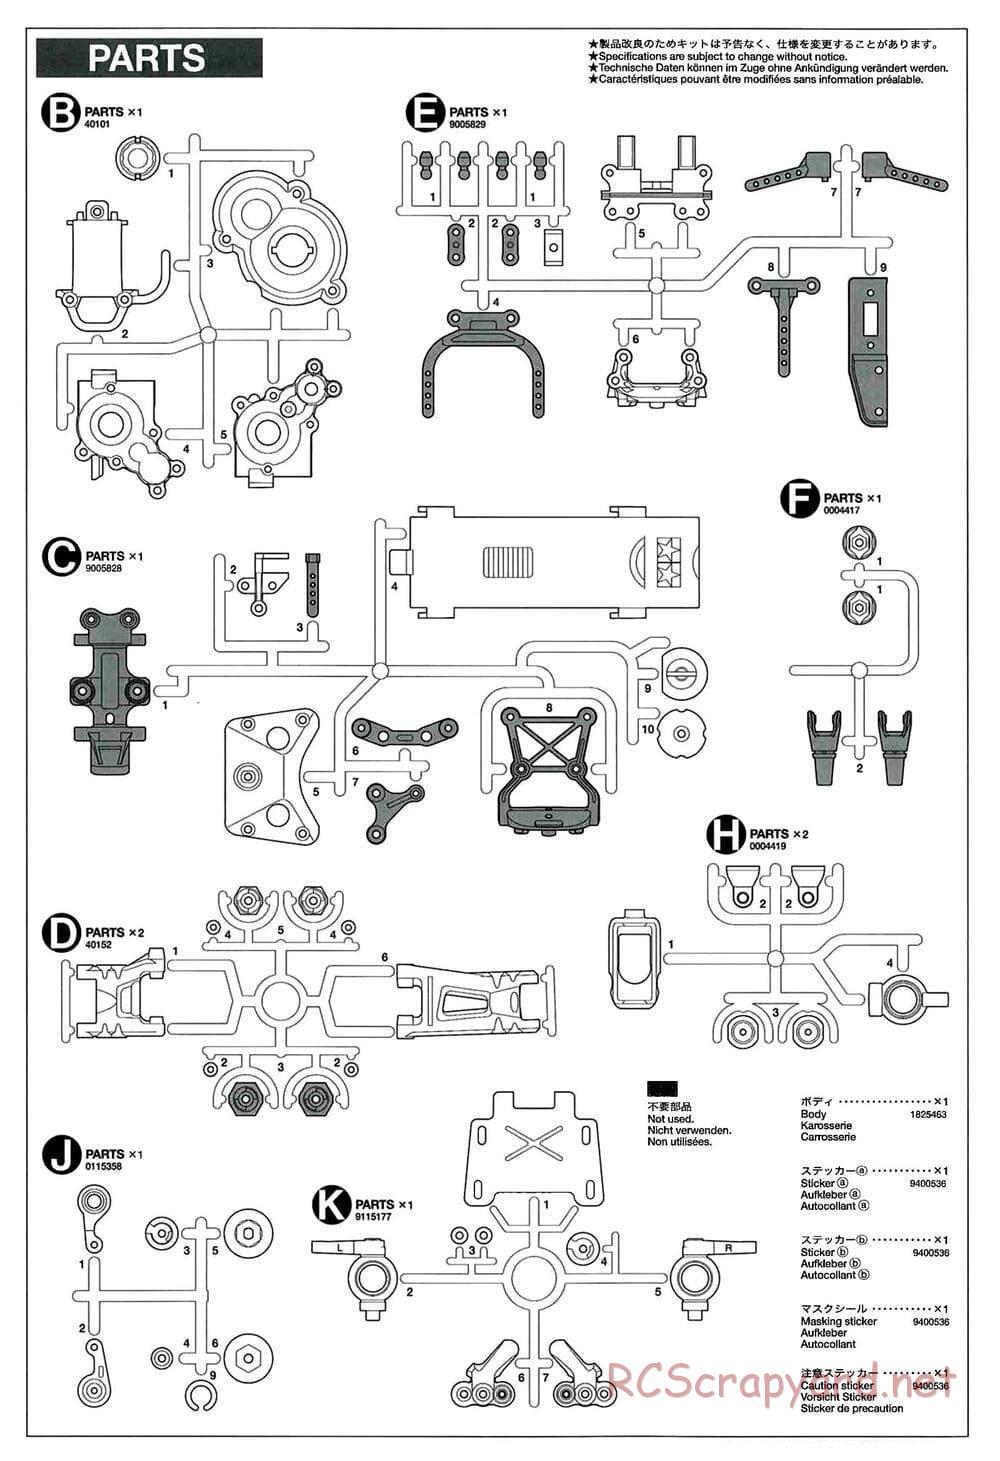 Tamiya - GT-01 Chassis - Manual - Page 19